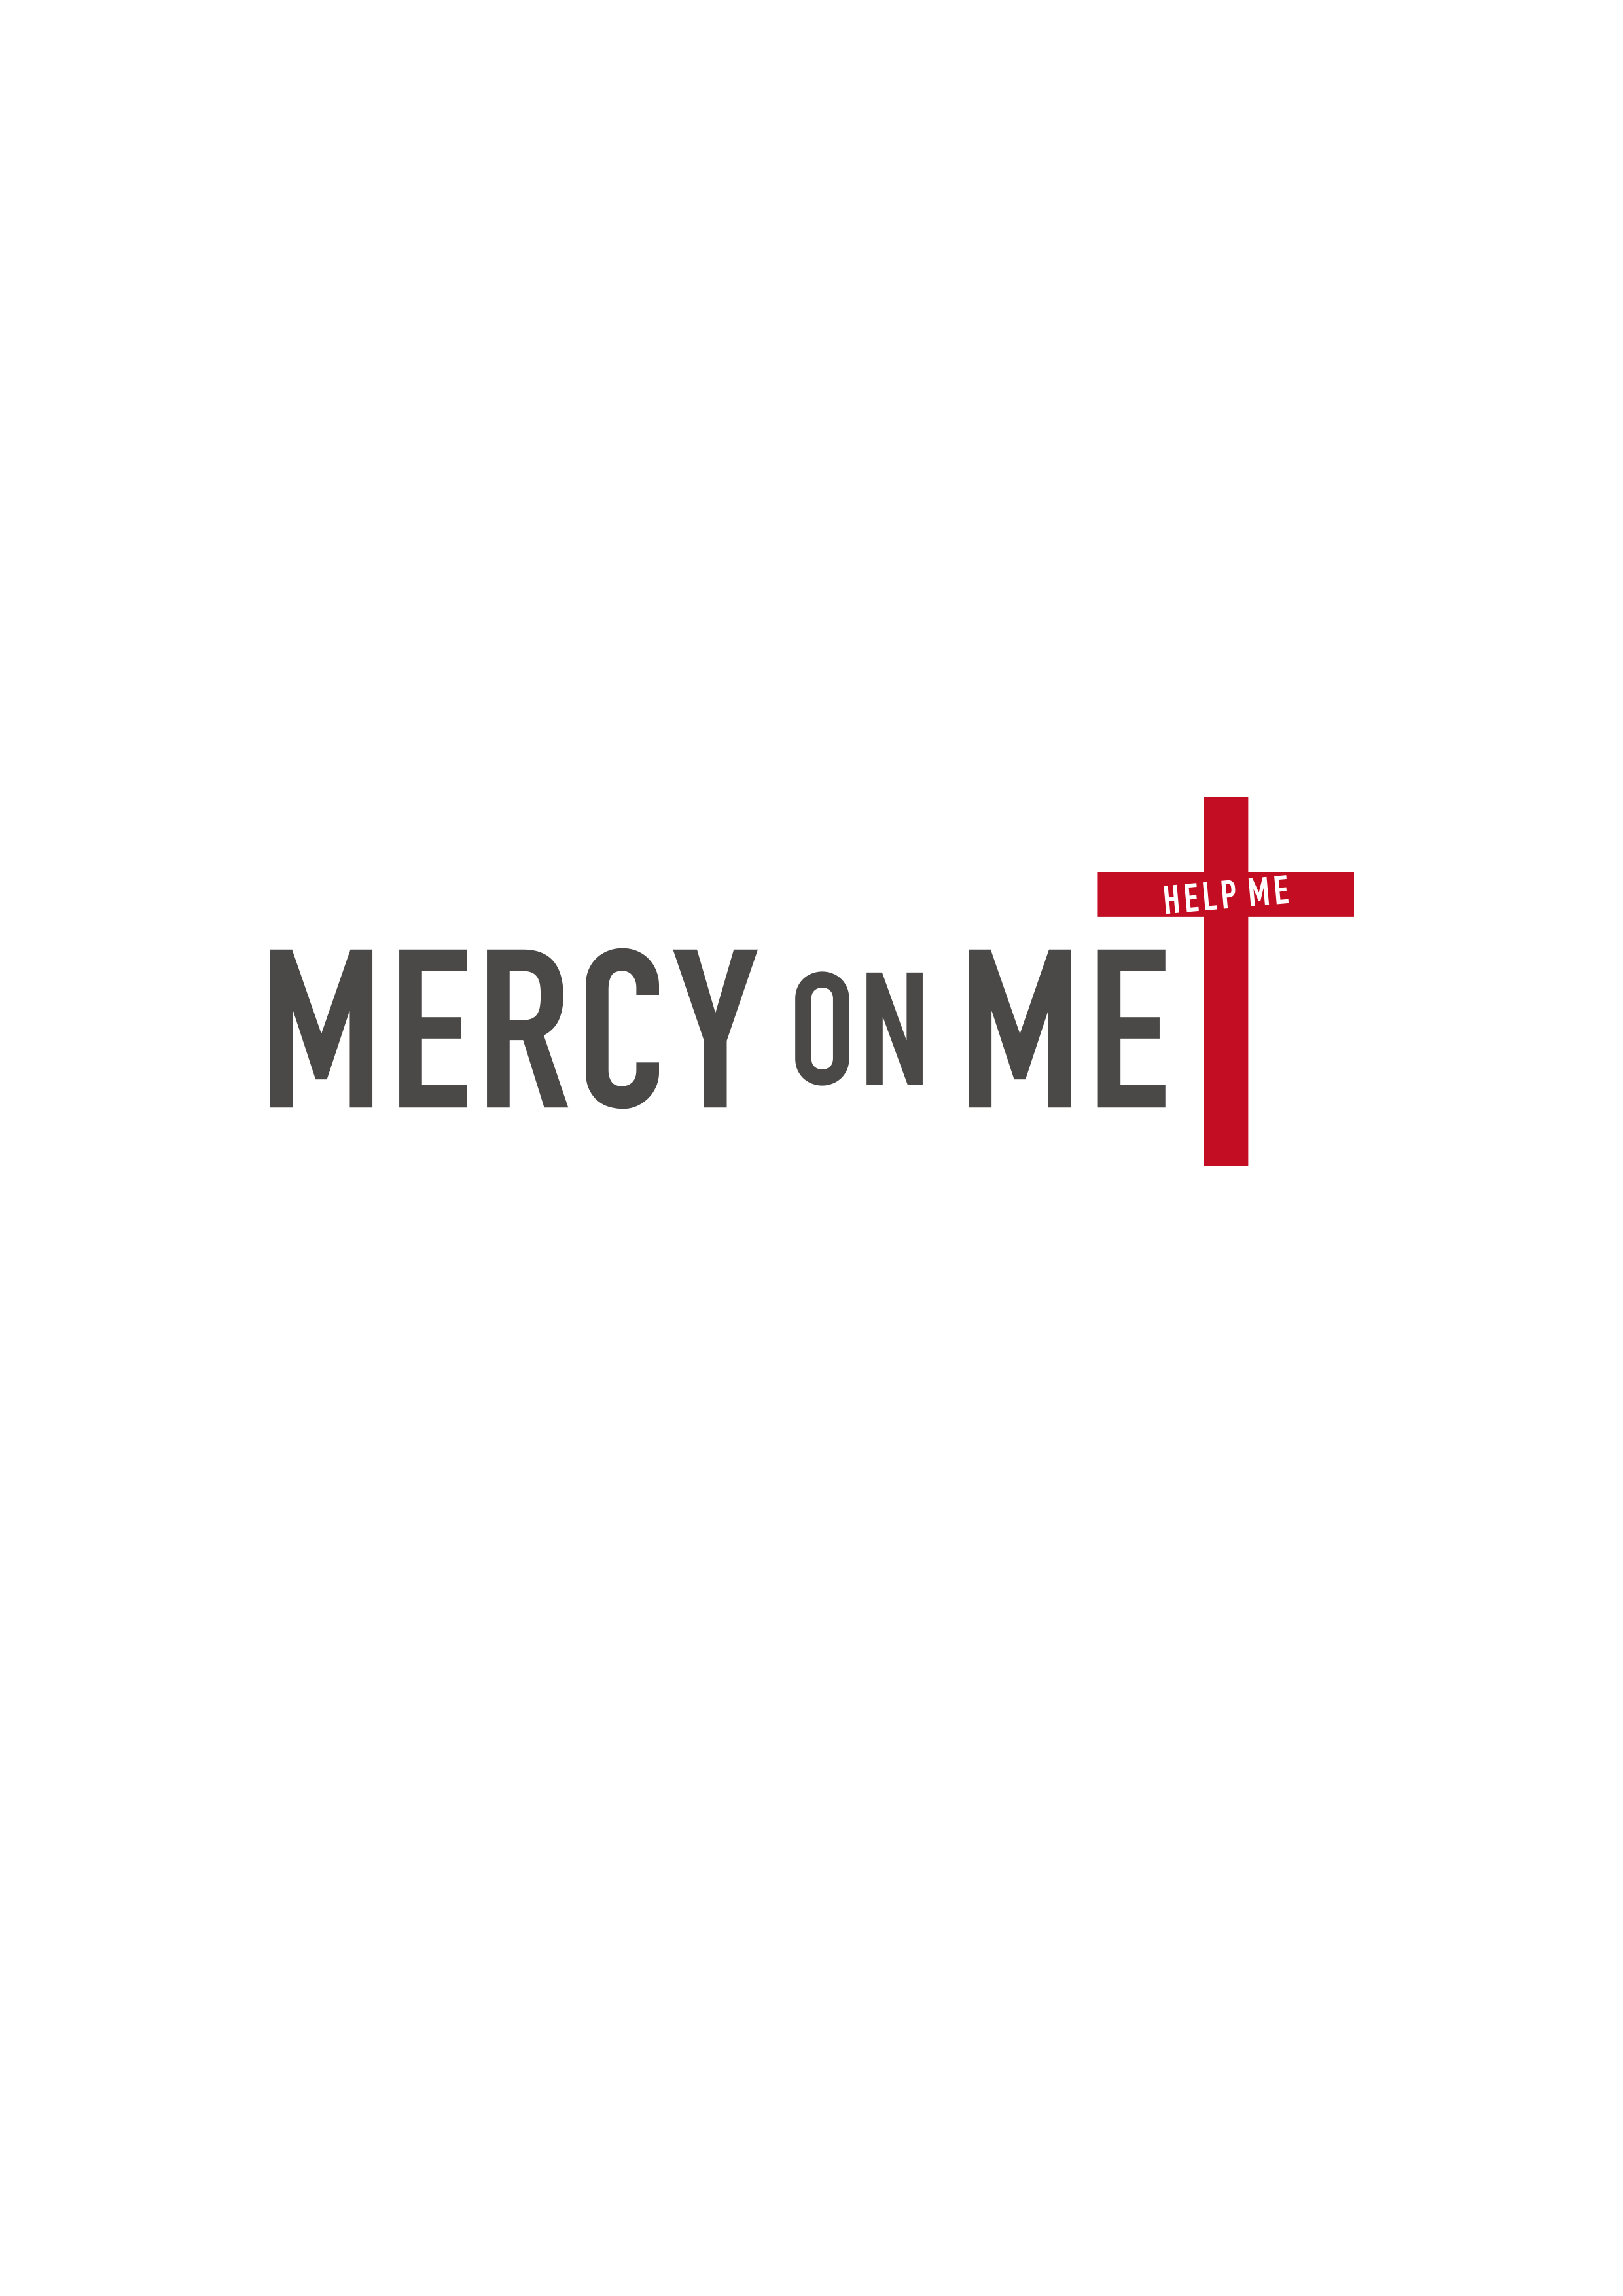 Mercy on me